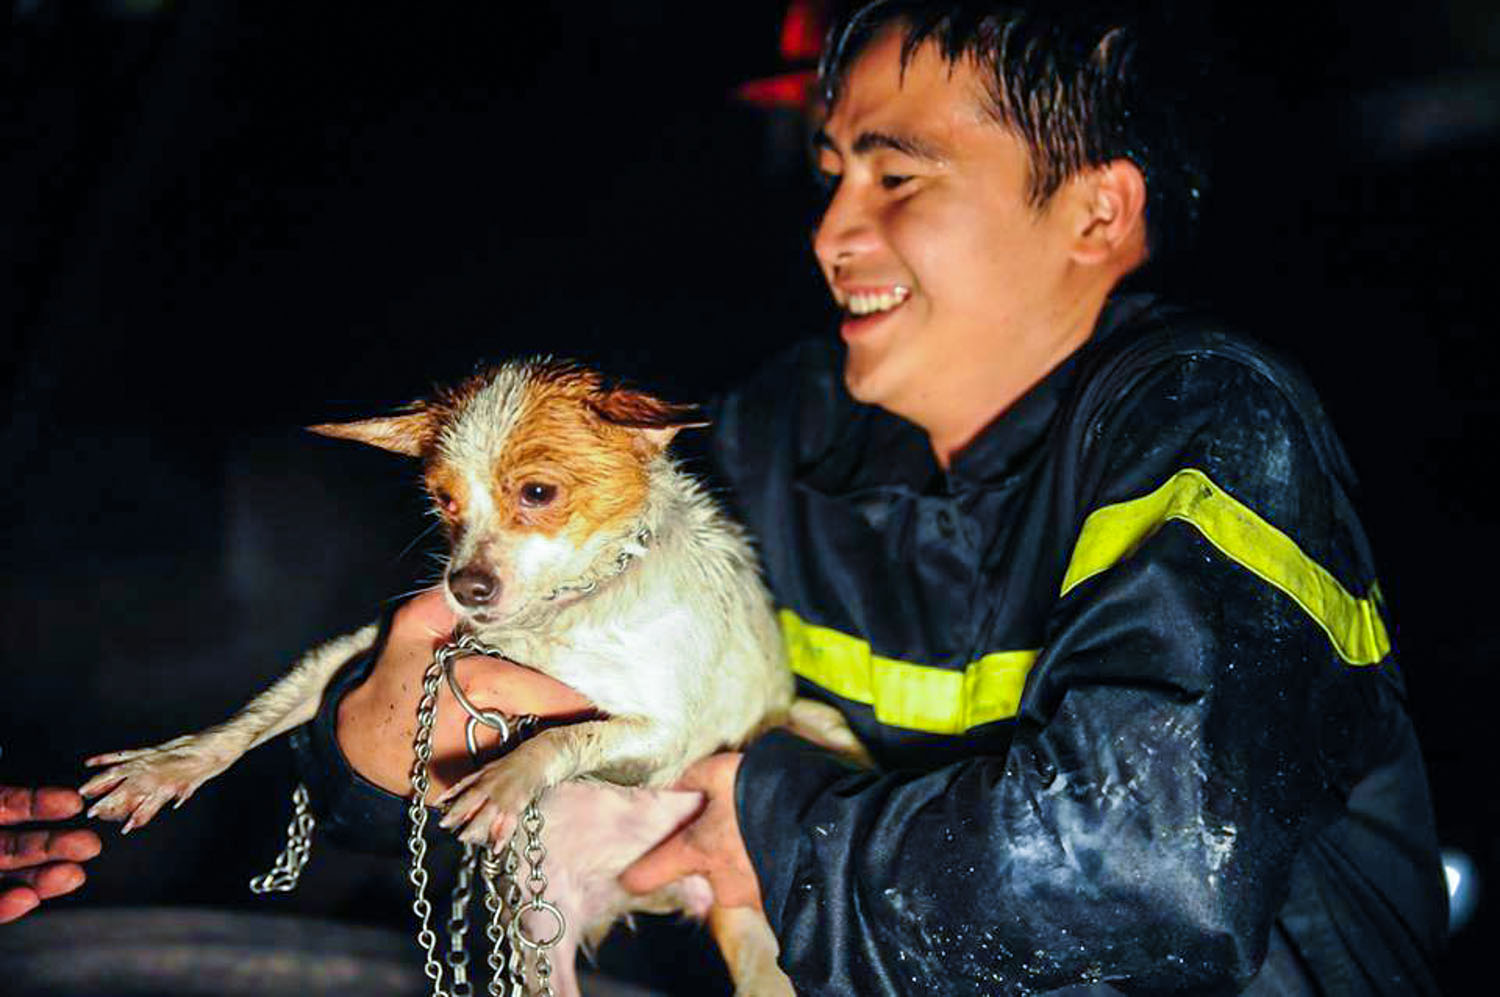 Niềm vui khi cứu thành công một chú chó nhỏ trong đám cháy của chiến sỹ. (Ảnh: Minh Sơn/Vietnam+)